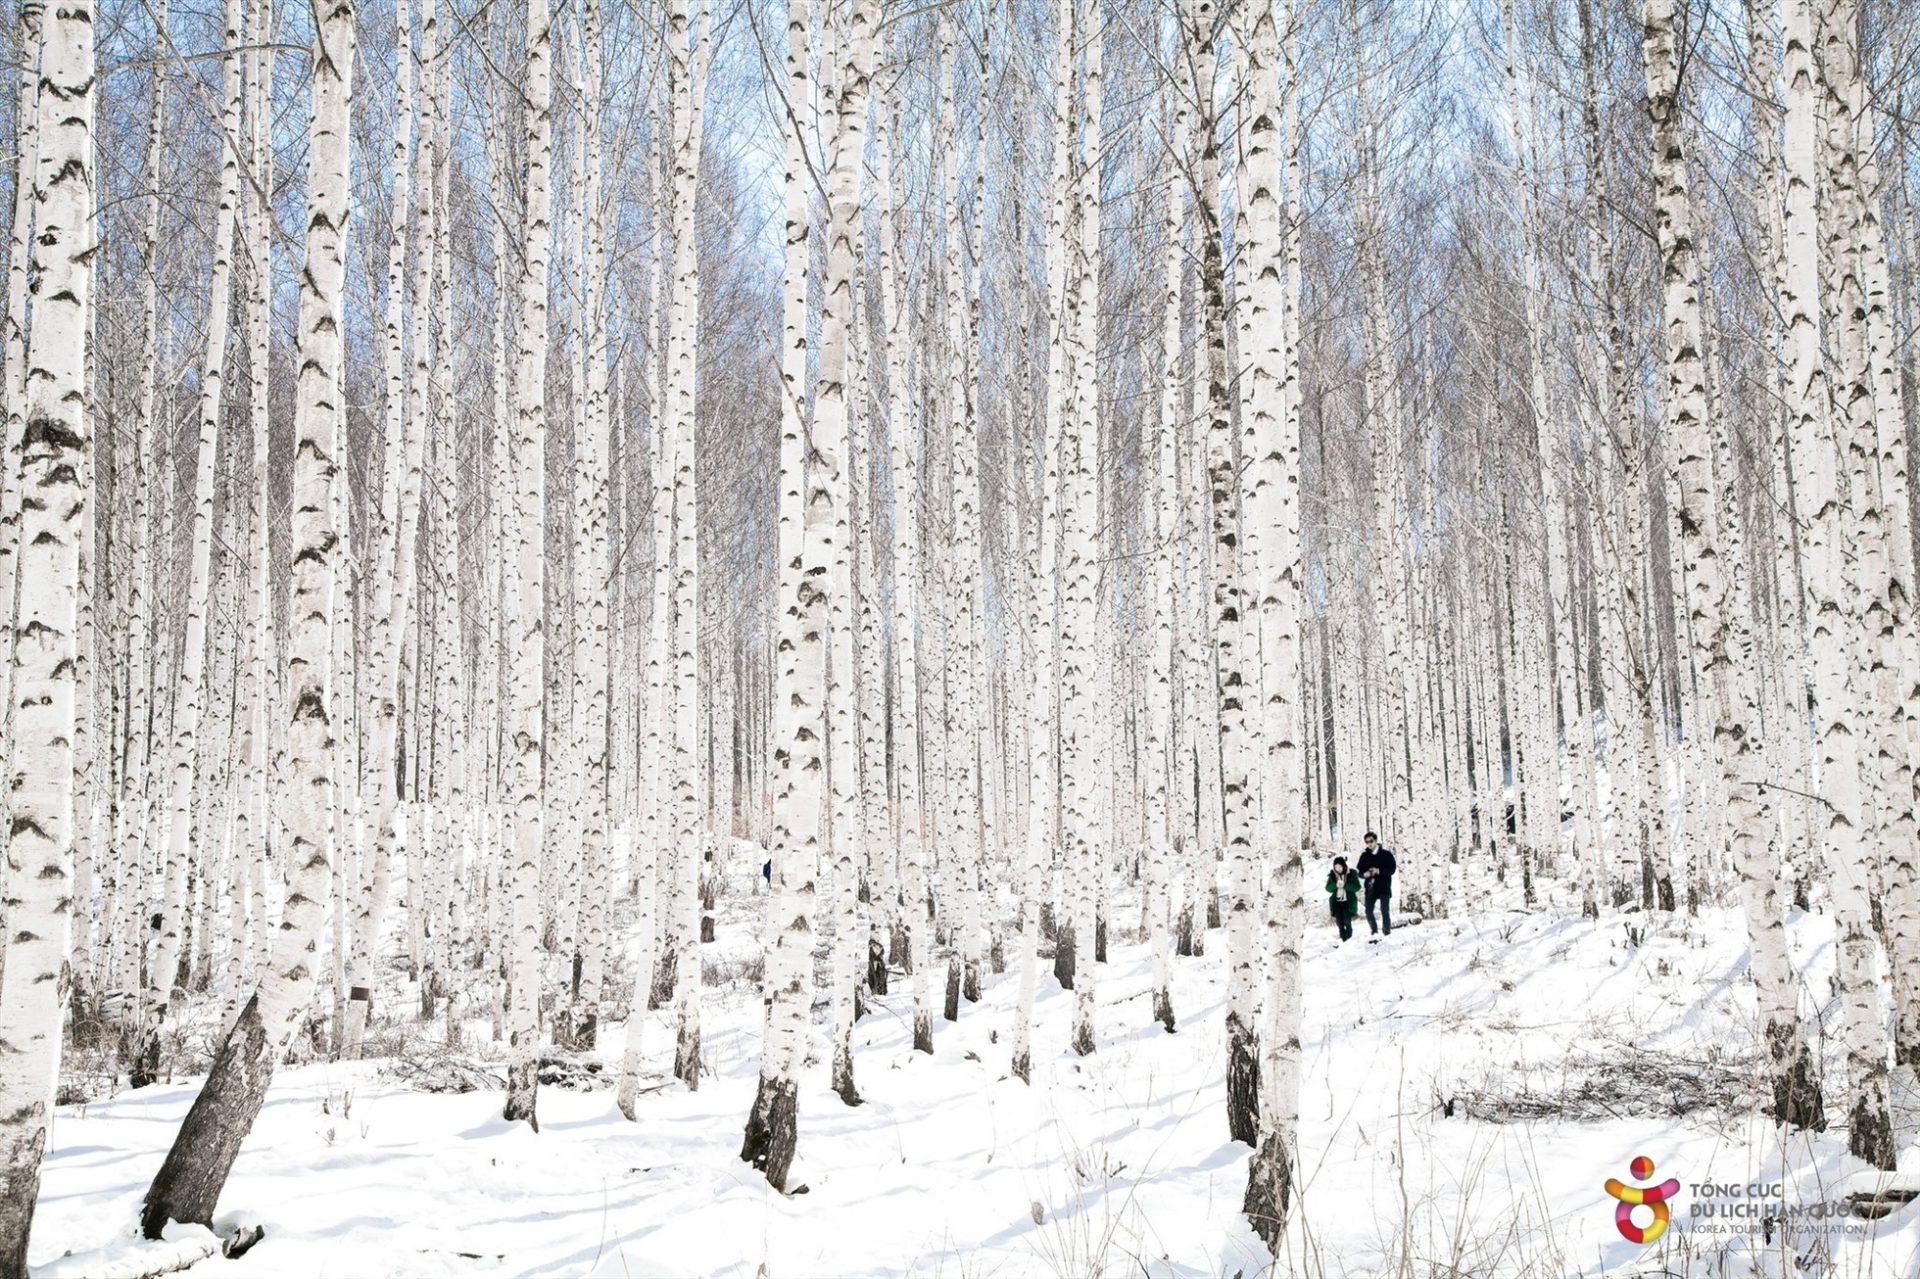 Đối với người Hàn Quốc, được ngắm tuyết rơi đầu mùa là một trong những khoảnh khắc ý nghĩa nhất trong năm. Ở nhiều nơi tại Hàn Quốc, tuyết đã bắt đầu rơi từng đợt đầu tiên vào cuối tháng 11.